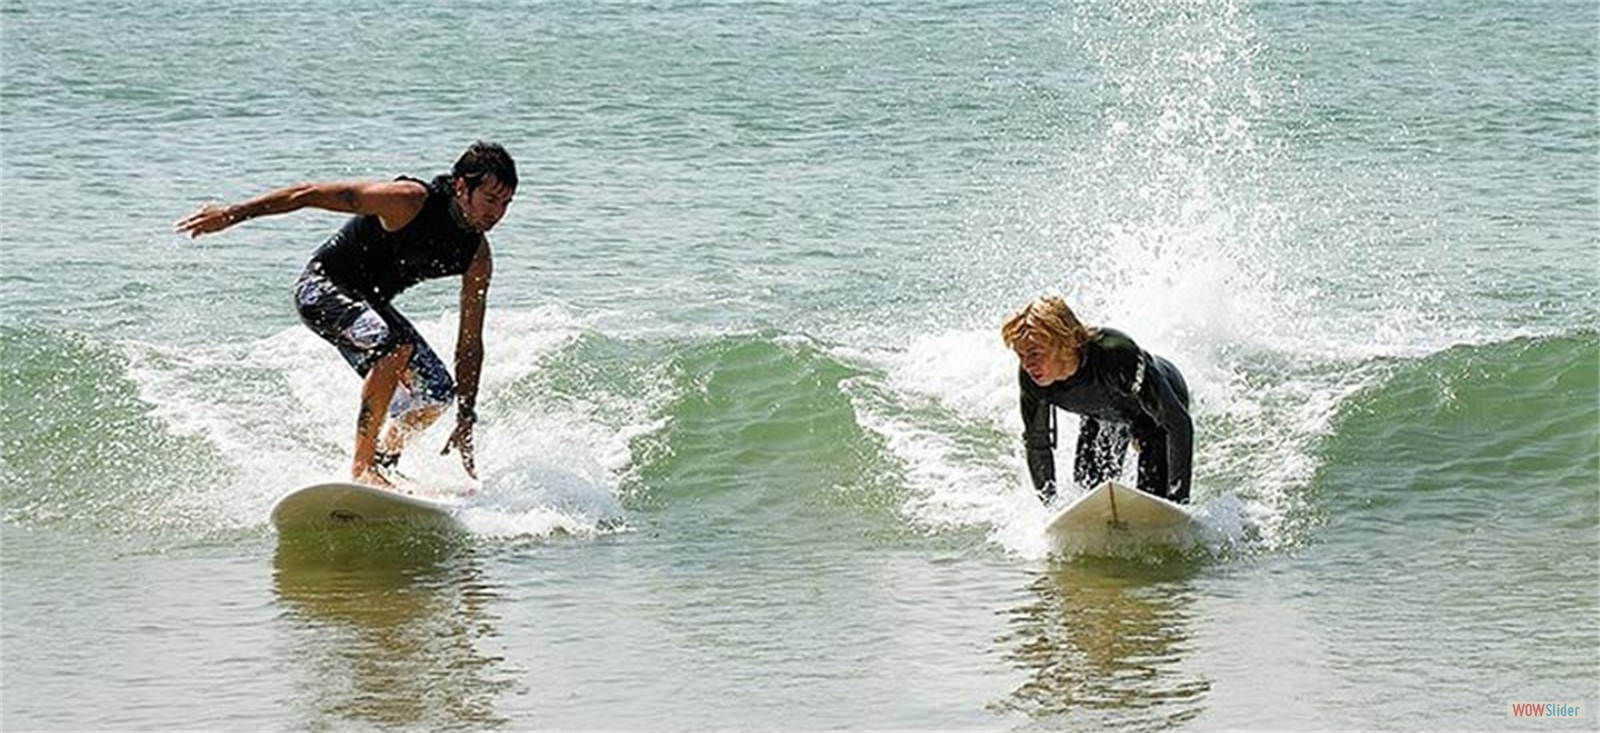 Bretignolles surfing